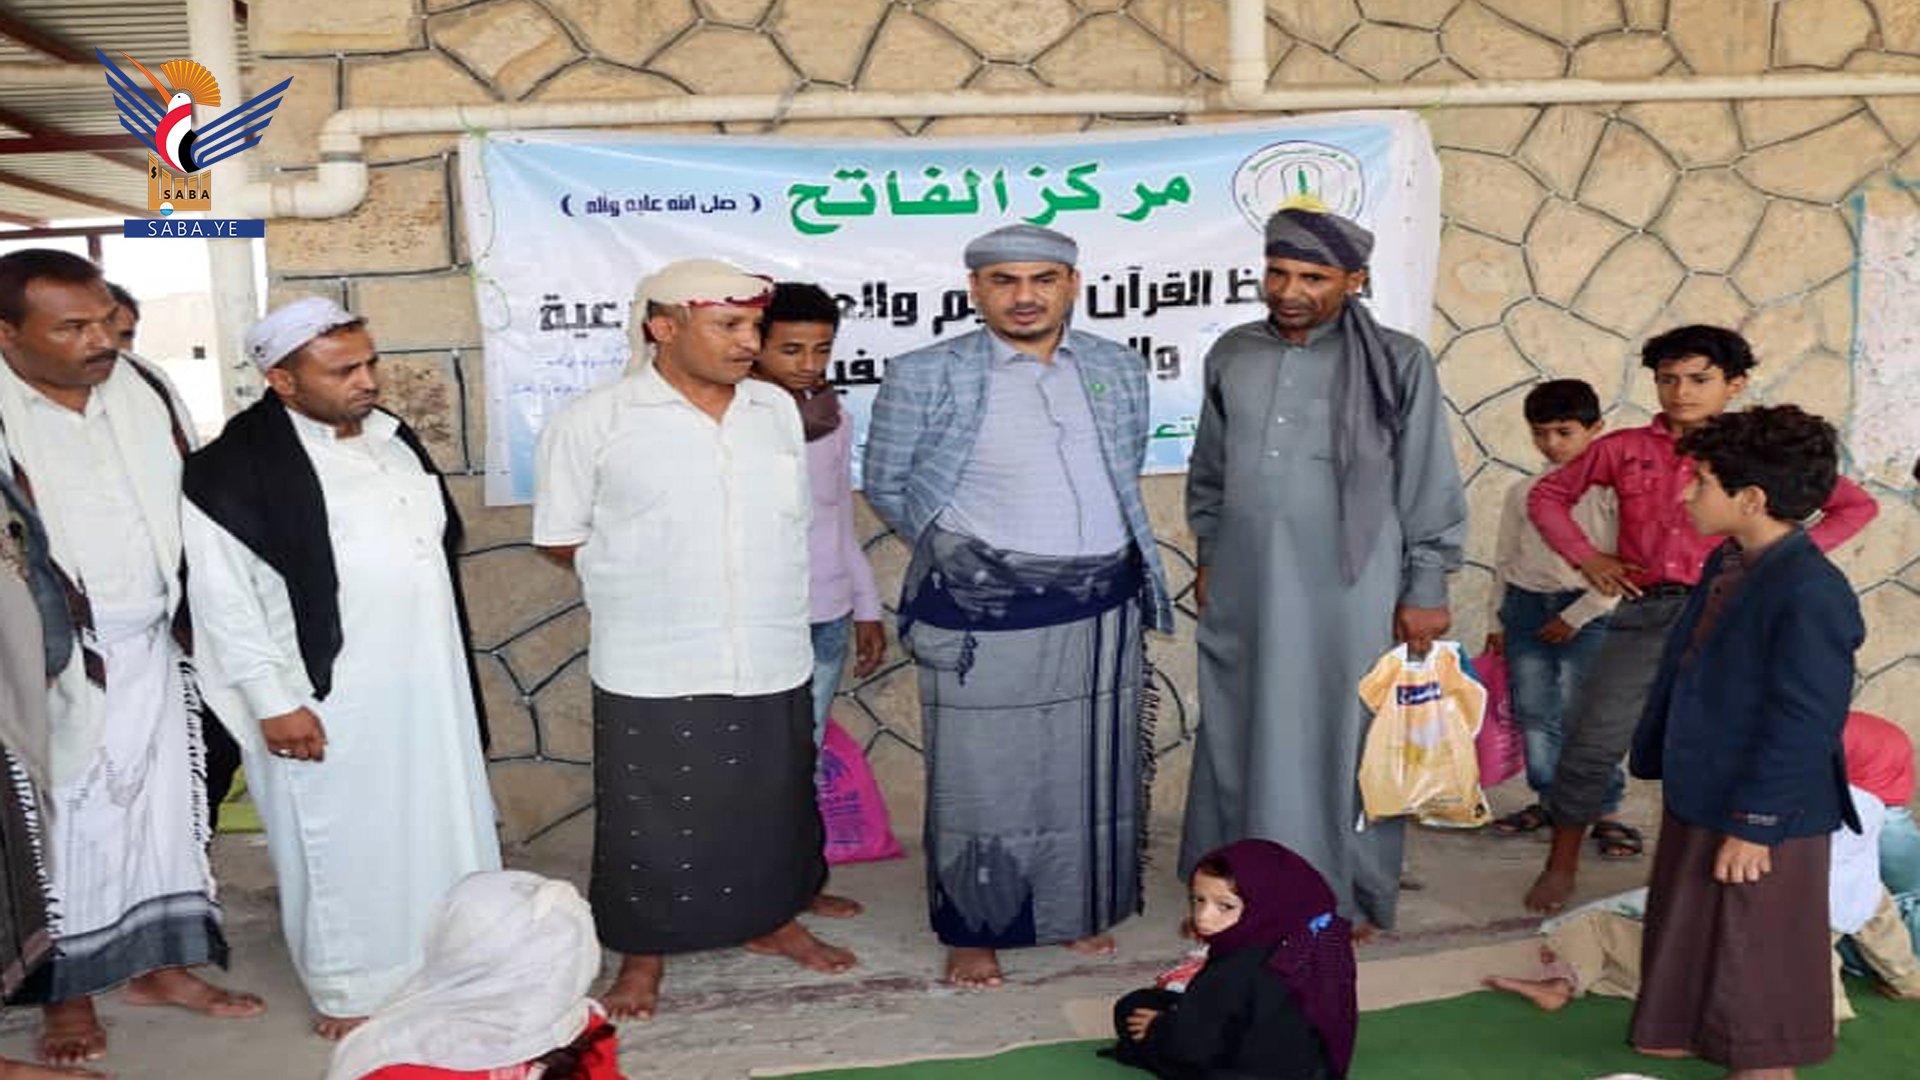 Le gouverneur de Taiz inspecte les activités du centre d'été Al-Fateh à Al-Habil Al-Aswad dans la région de Taiziyah